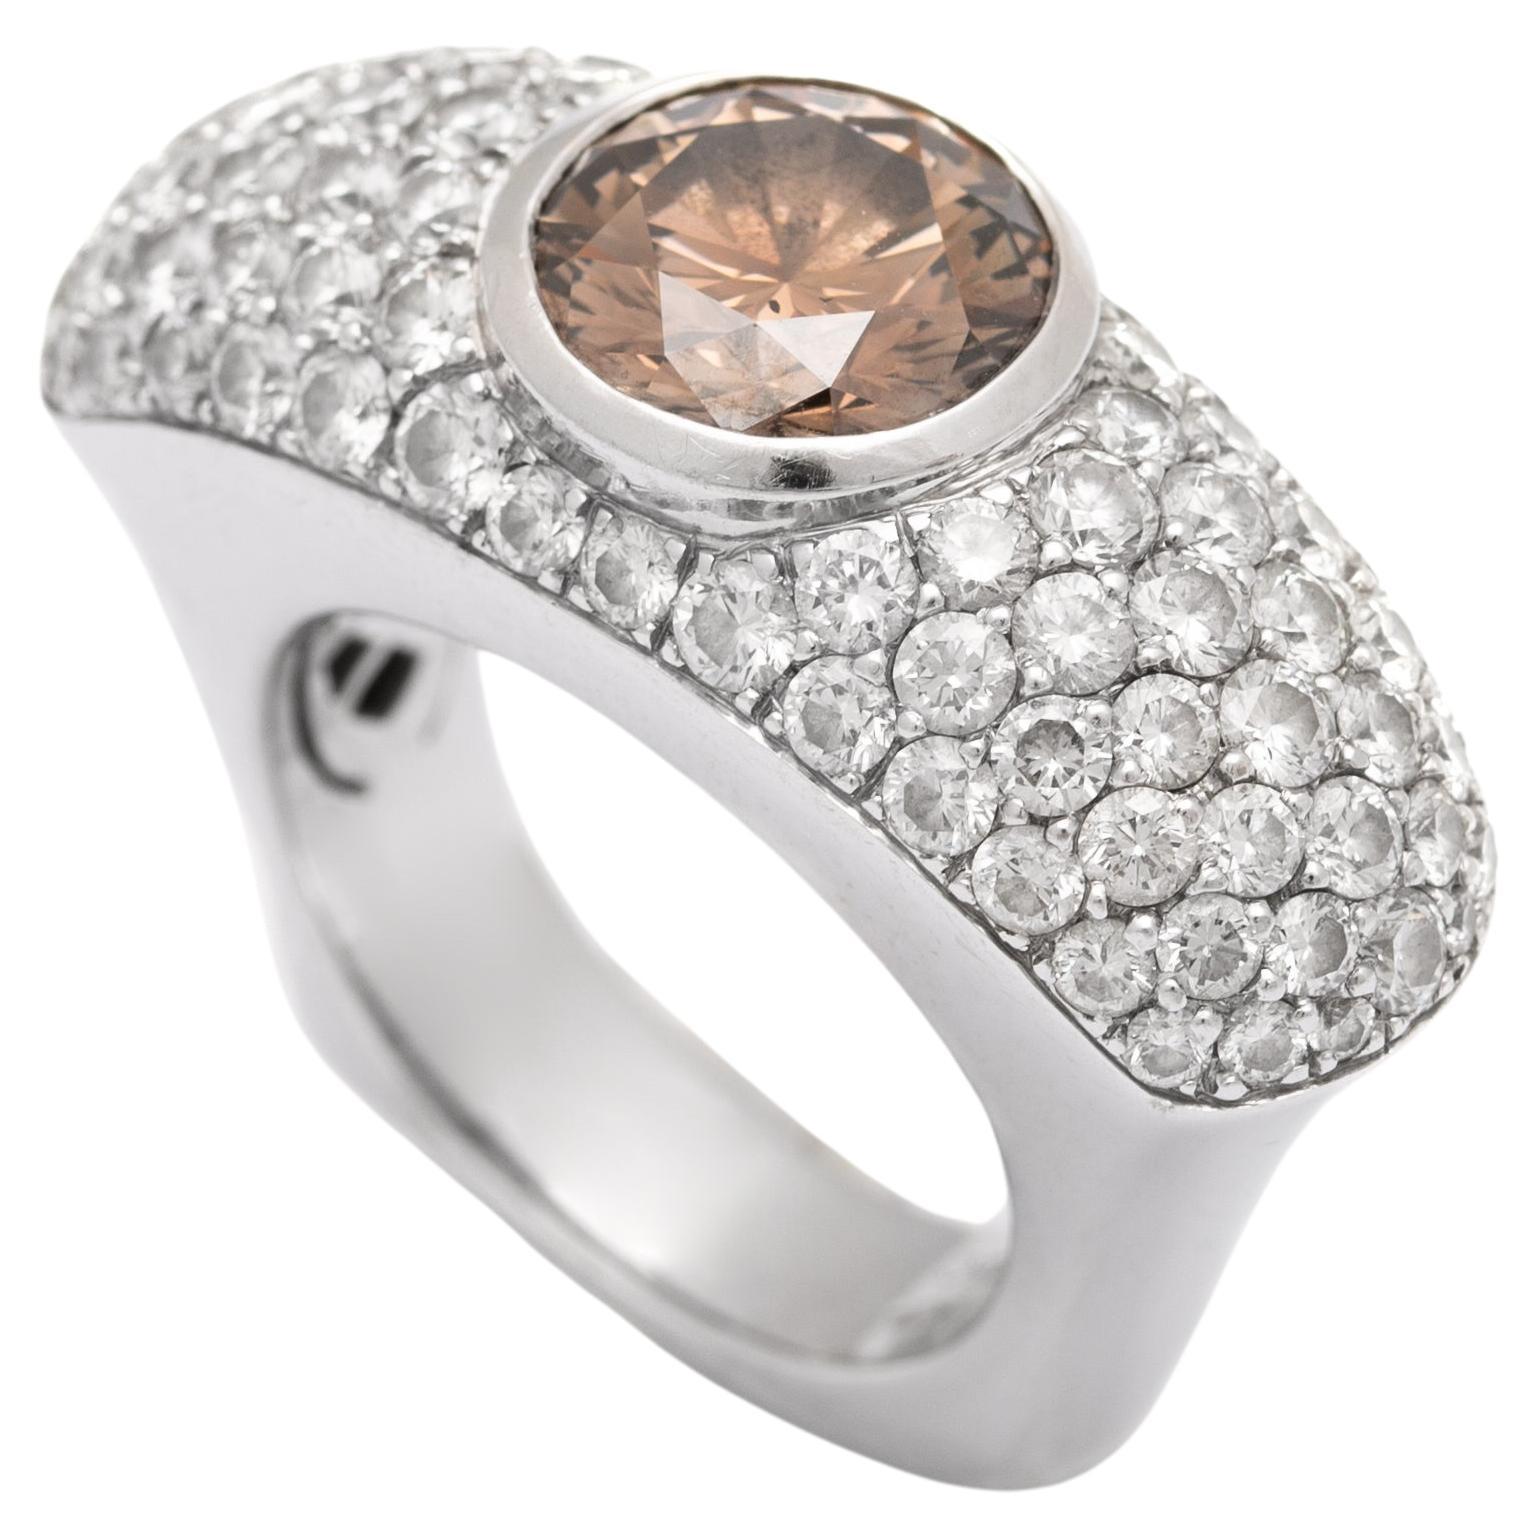 Diamant naturel Fancy dark Orangy Brown de 3,03 carats centré sur une bague en or blanc et diamant 18K.
Selon le certificat GIA 137712901.
Taille de l'anneau : 7
Poids : 18,83 grammes